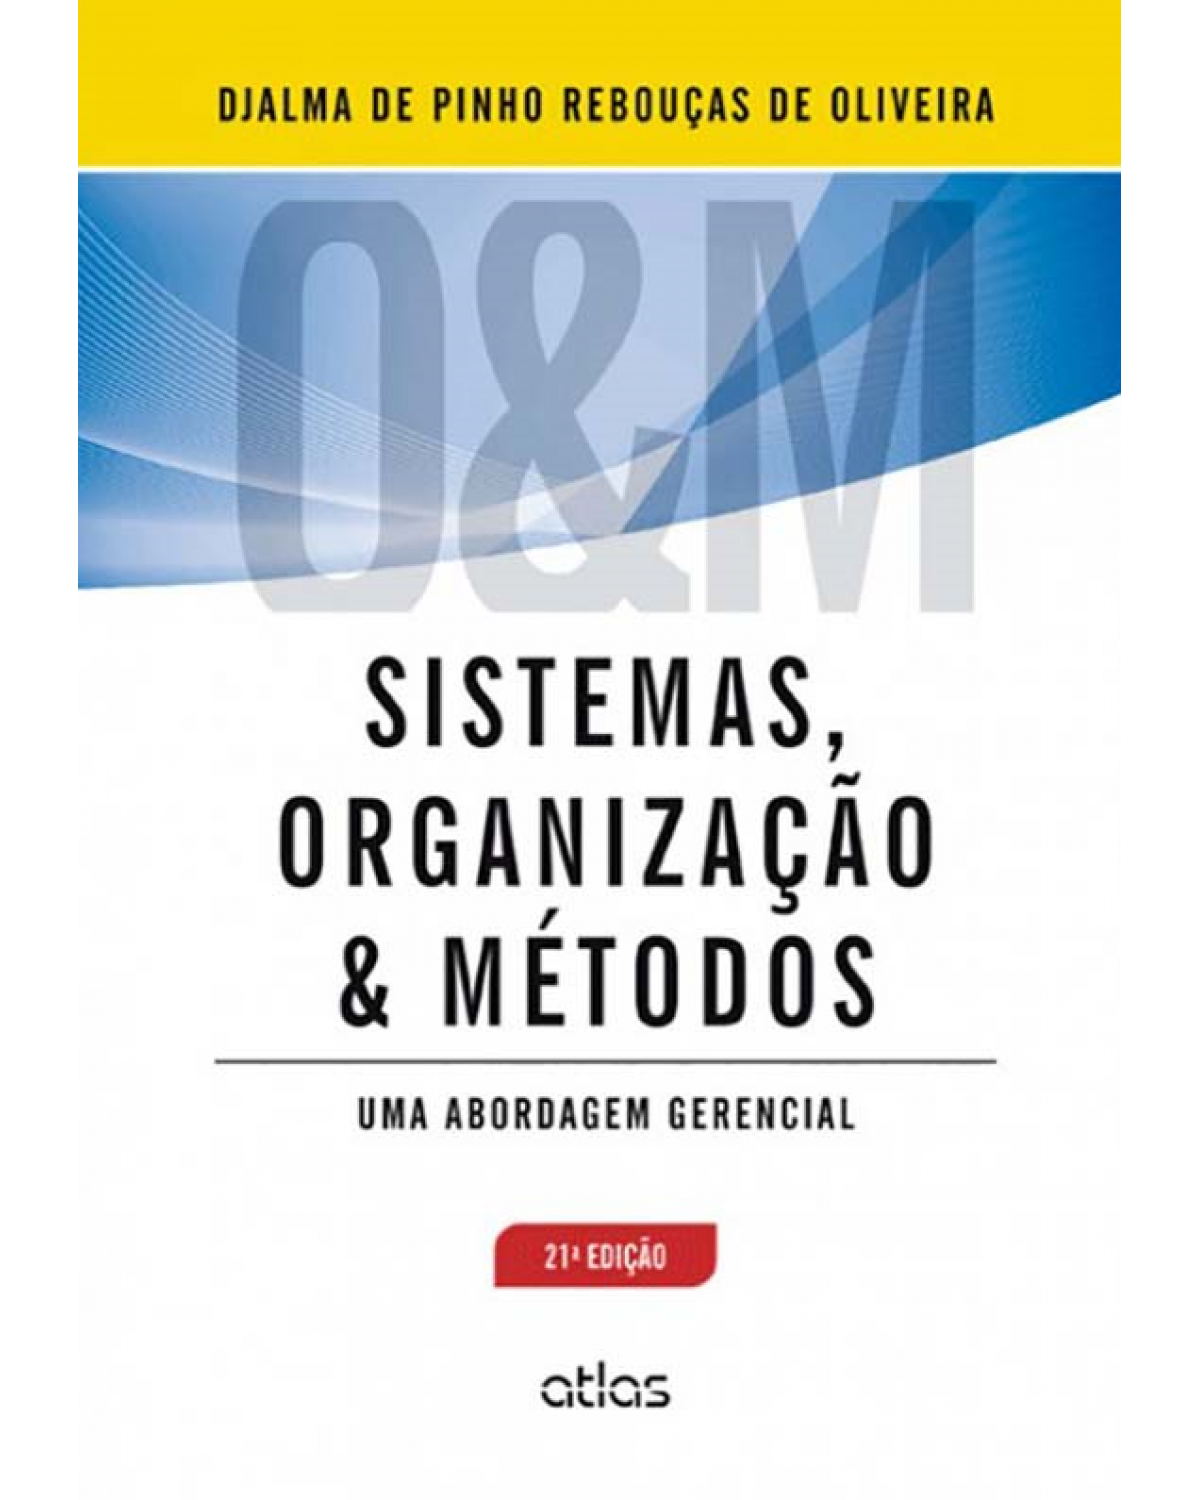 Sistemas, organização e métodos - Uma abordagem gerencial - 21ª Edição | 2013